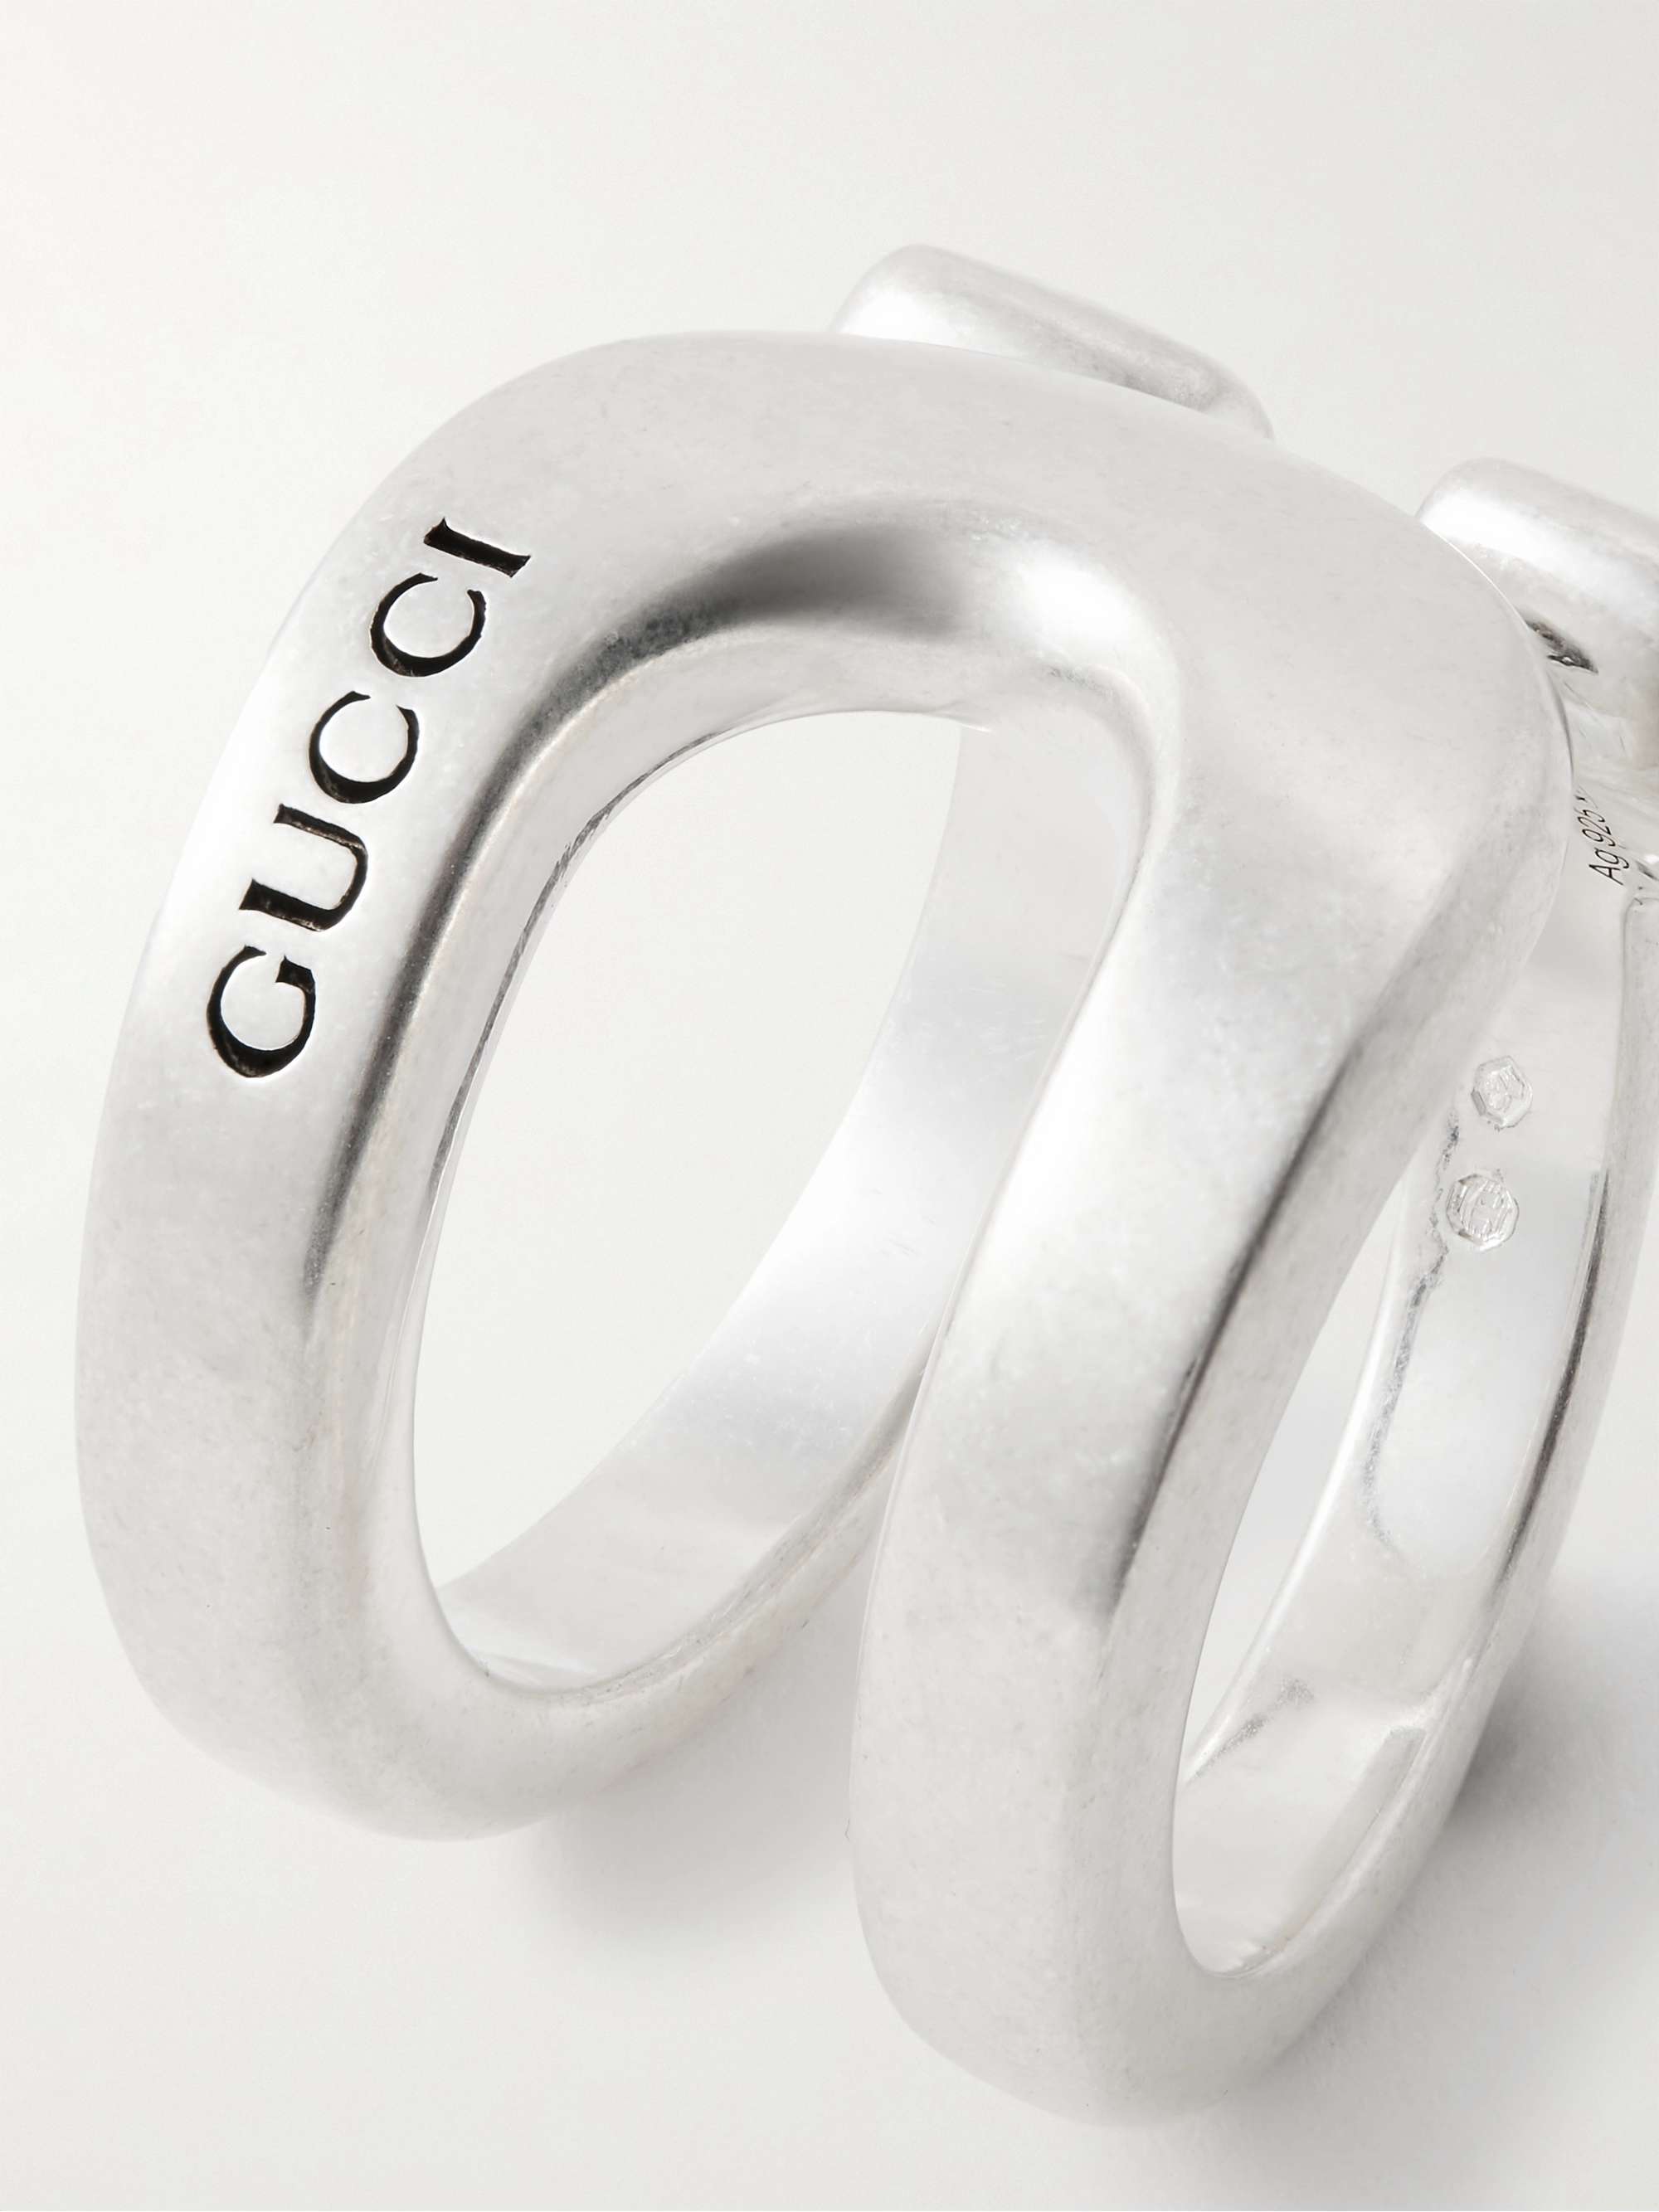 GUCCI Logo-Engraved Sterling Silver Ring for Men | MR PORTER